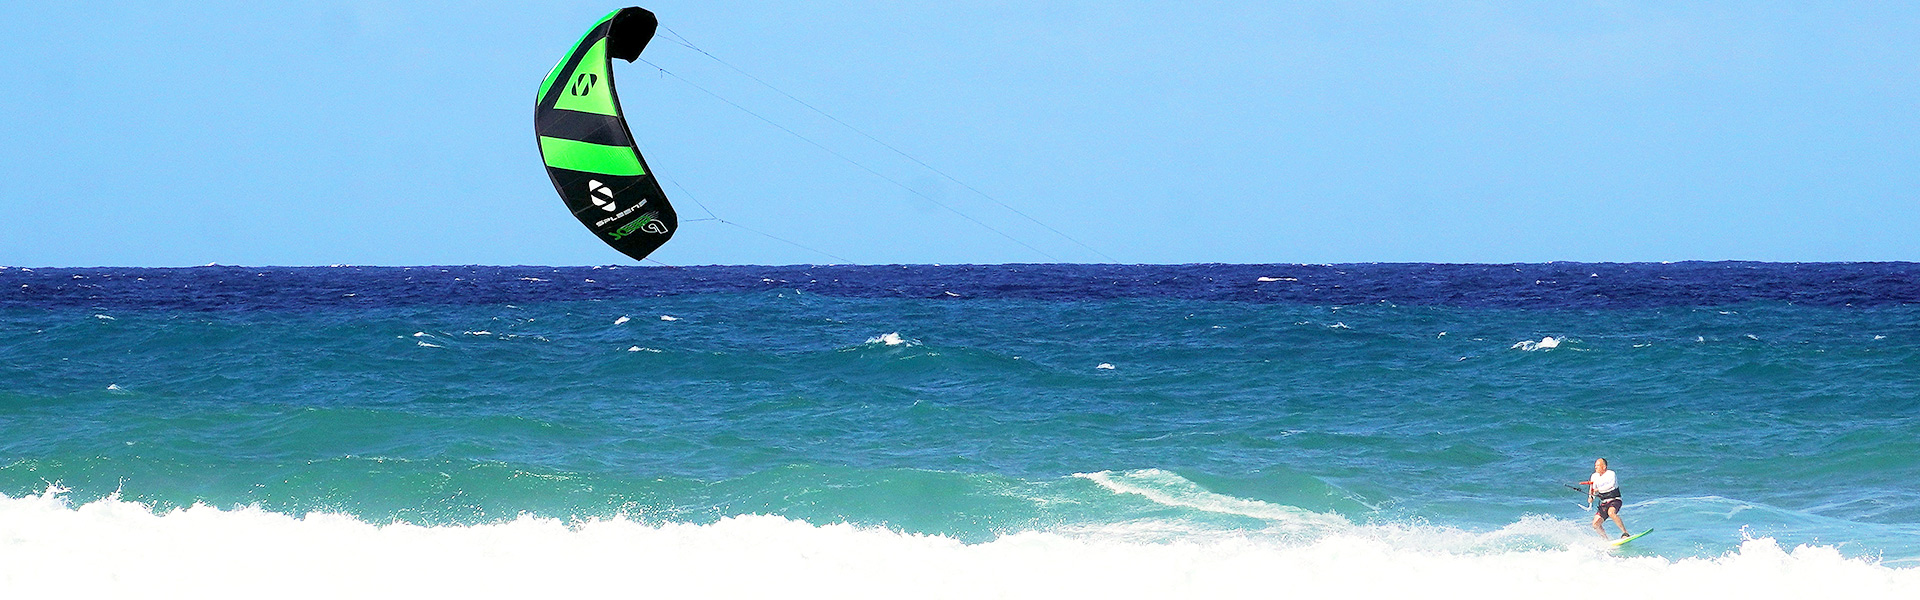 SQUID Kite Banner - SPLEENE Kiteboarding